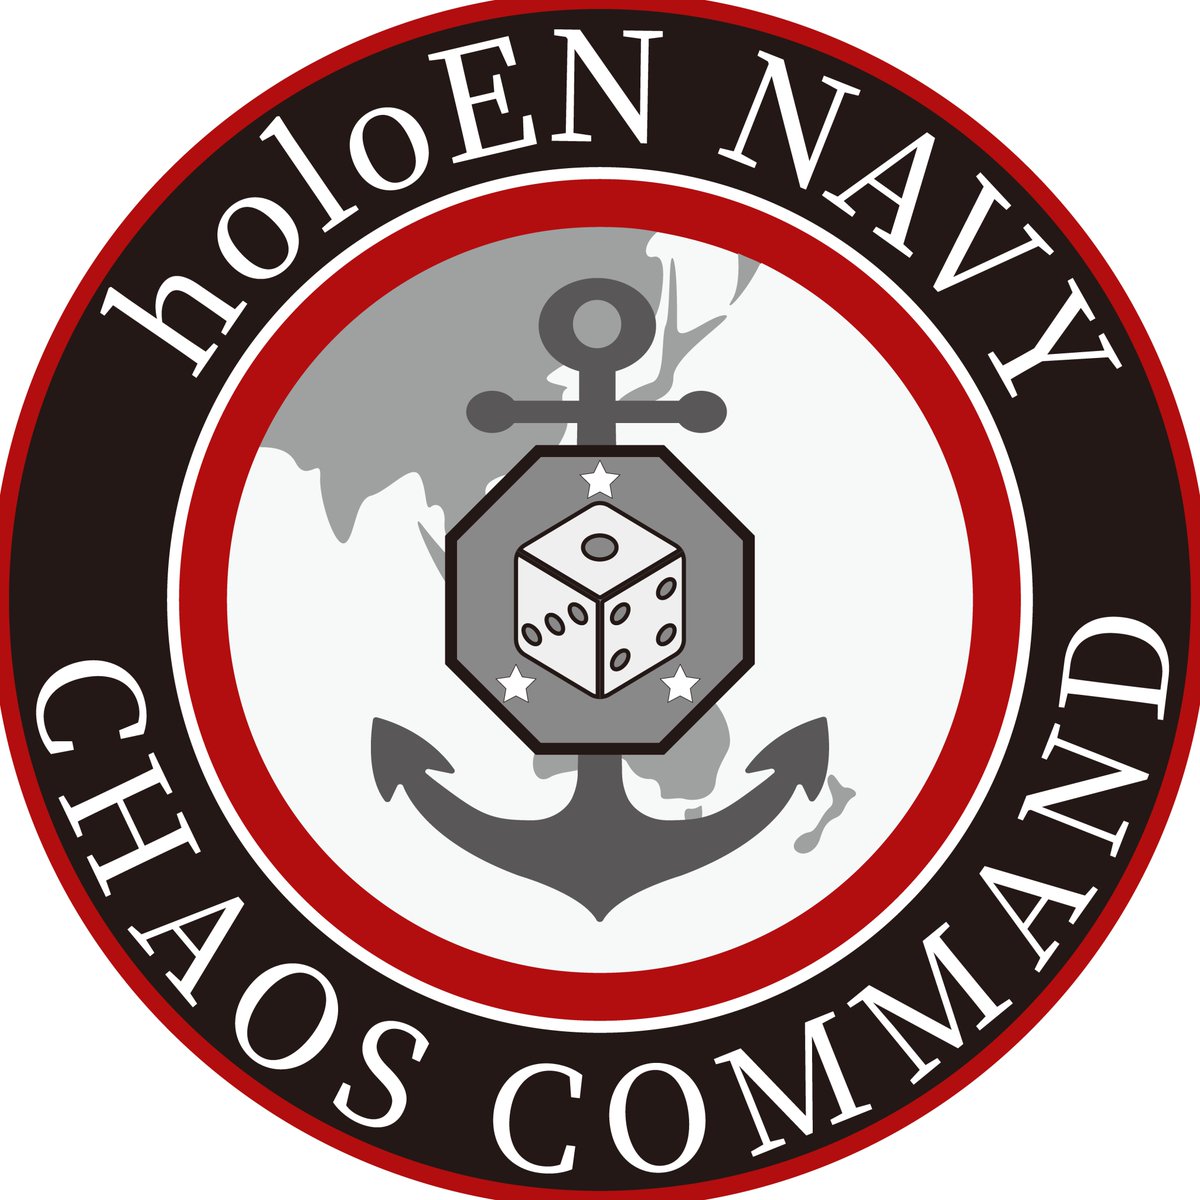 하코스 벨즈 중장님의 지휘 아래 항해하는 홀로EN 해군의 혼돈사령부입니다. 🎲🫡
This is the CHAOS COMMAND from holoEN Navy, voyaging under the command of Lieutenant General, Hakos Baelz.🎲🫡
#BaelzBrush #WitnessMe